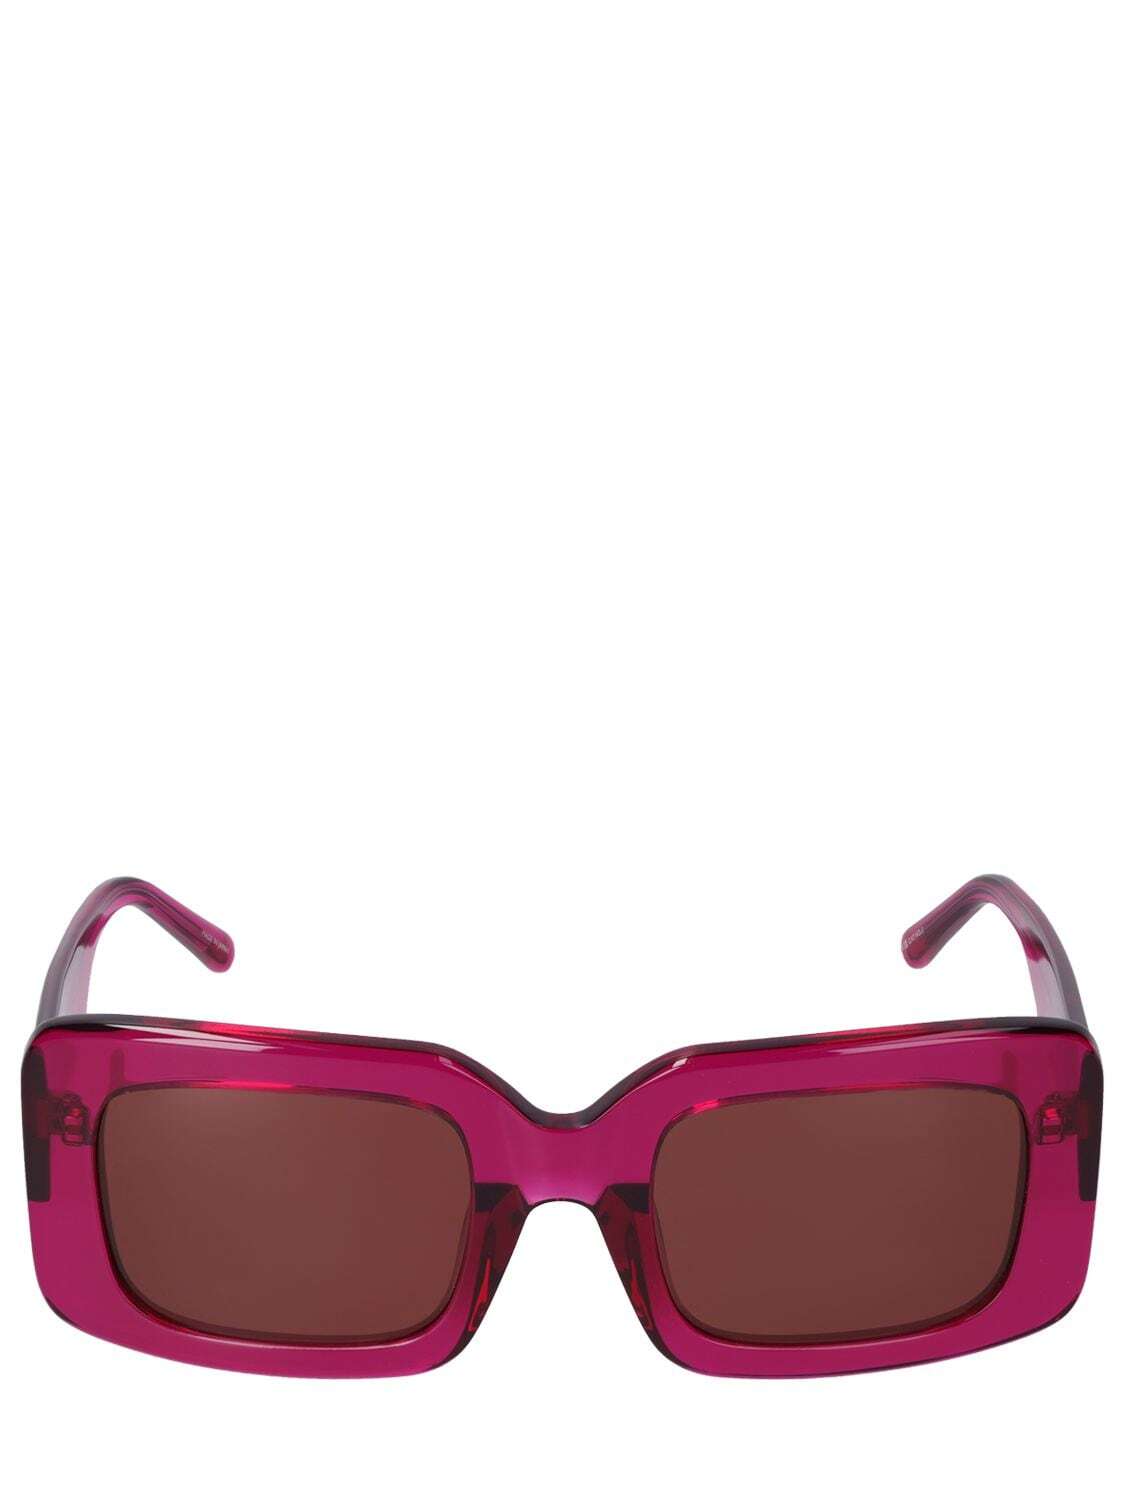 THE ATTICO Jorja Squared Acetate Sunglasses in brown / fuchsia